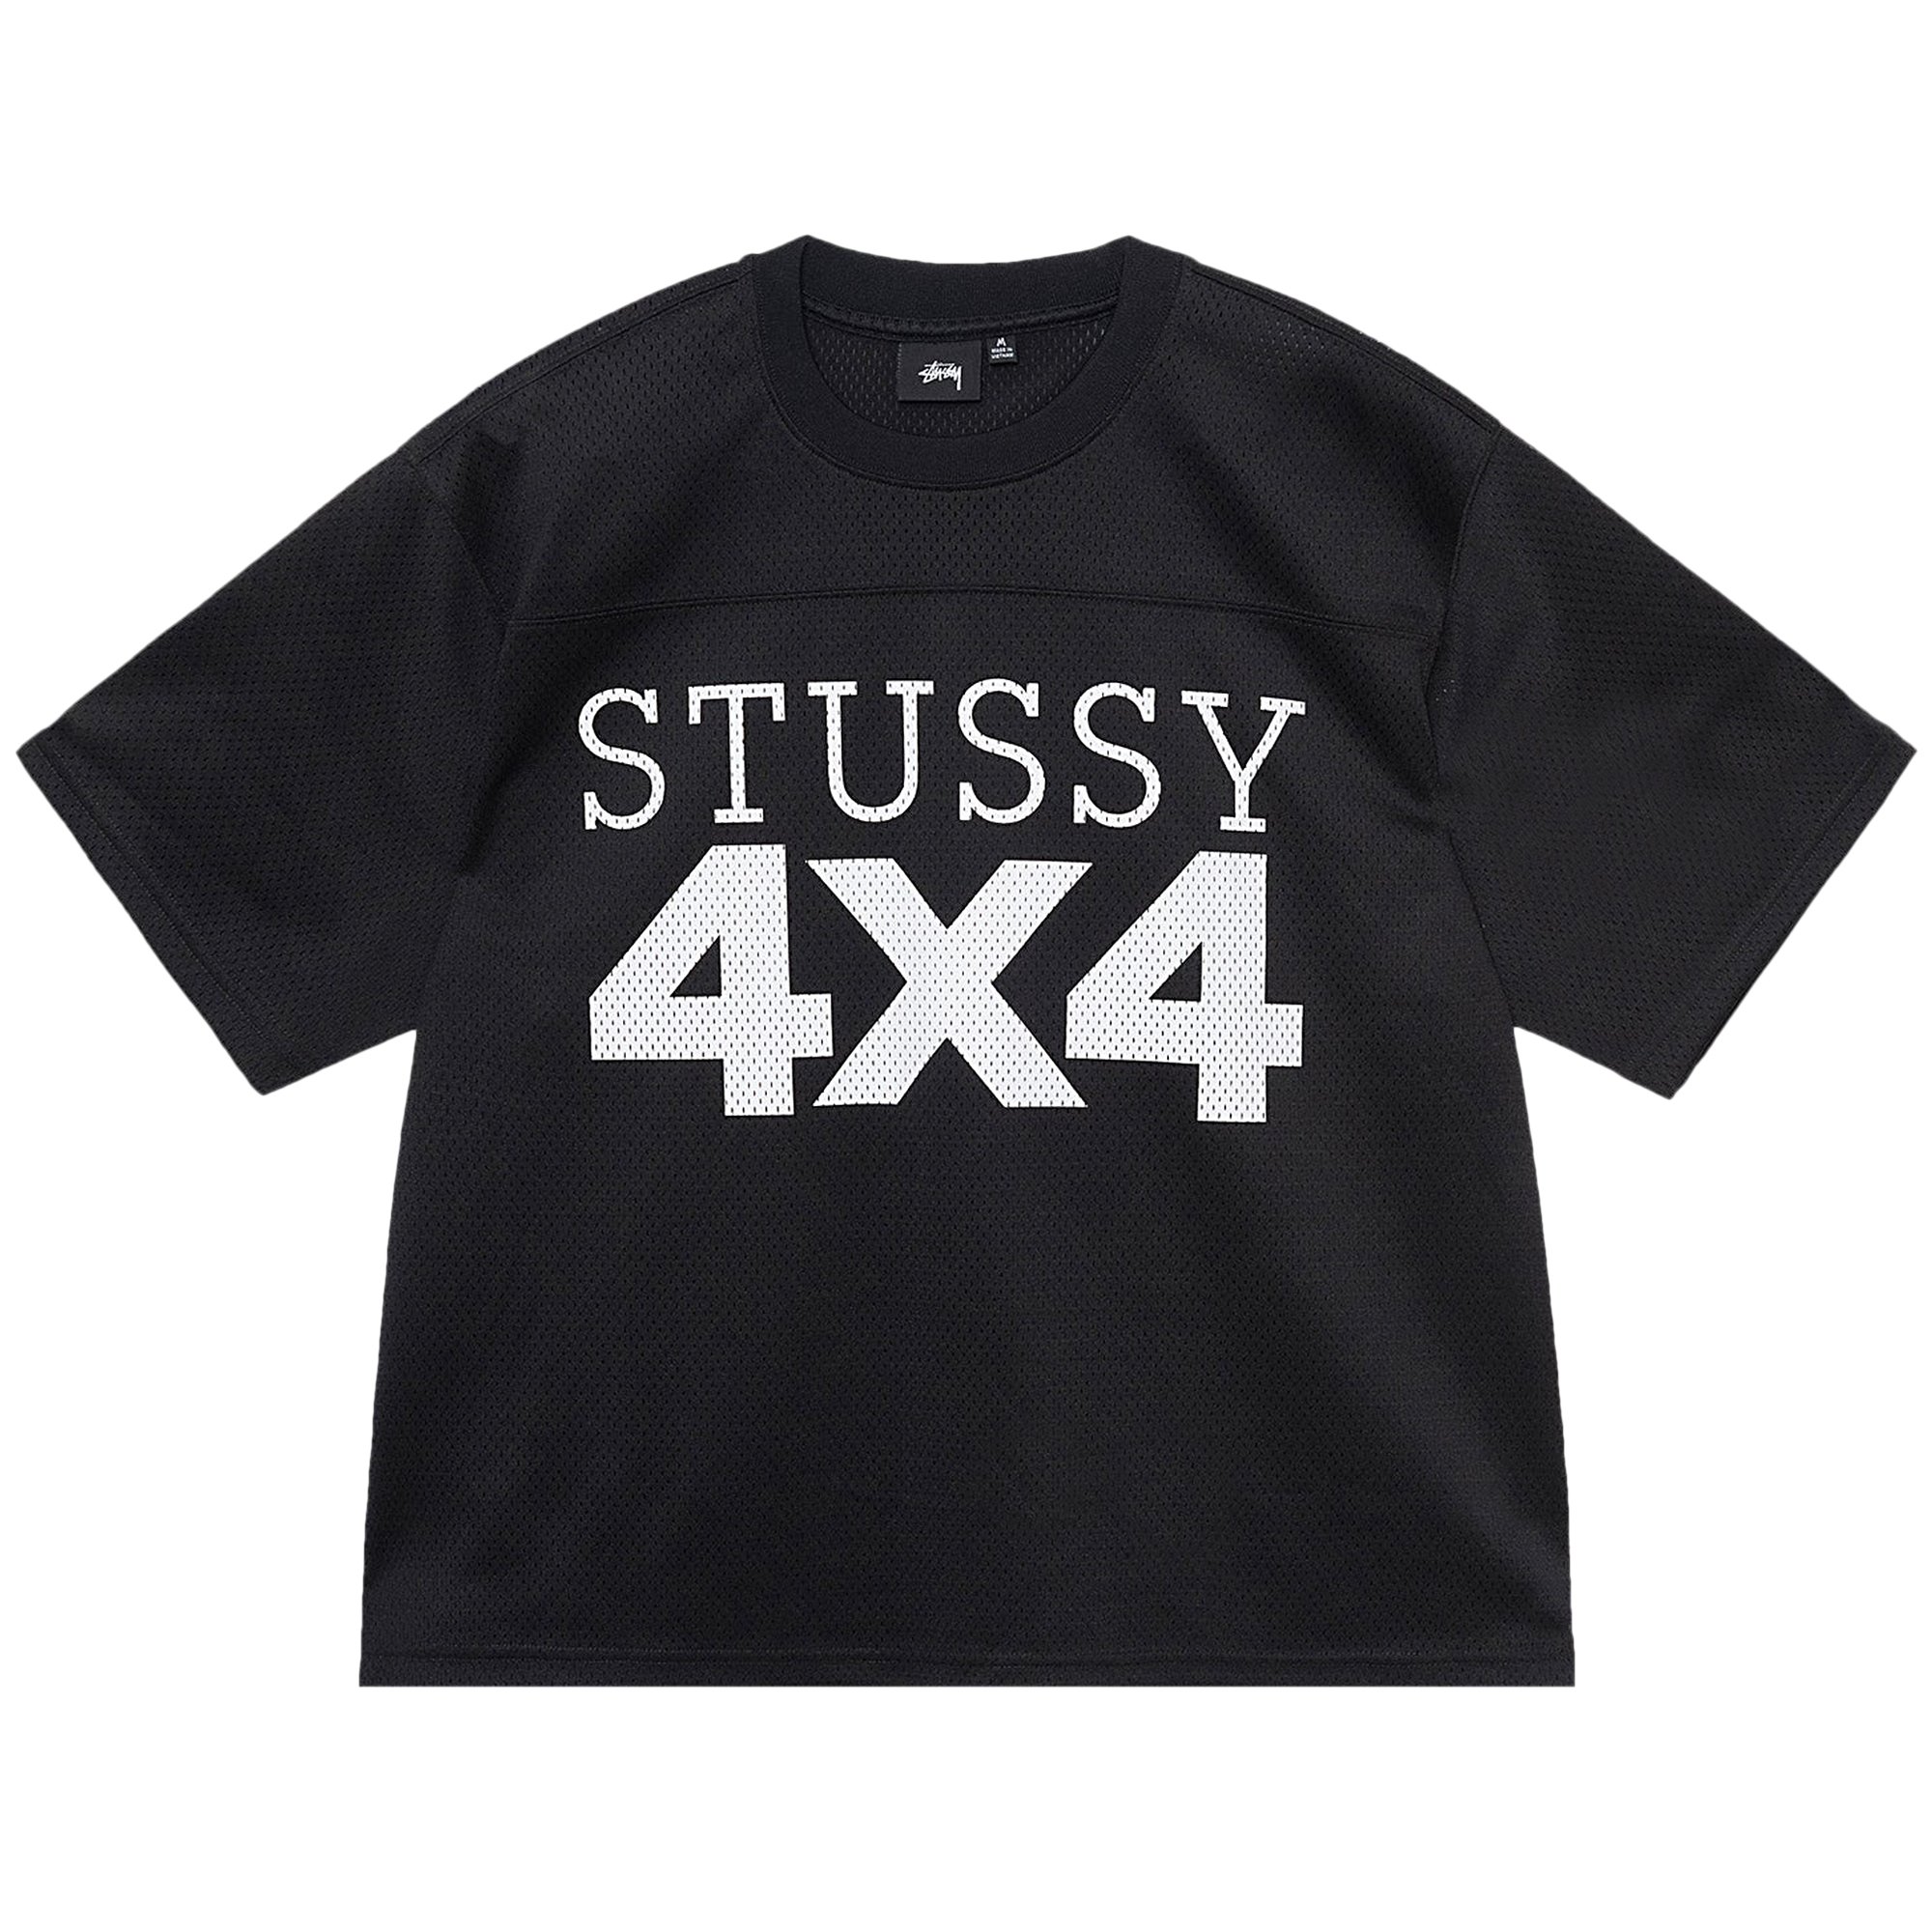 Сетчатая футбольная майка Stussy 4X4, черная